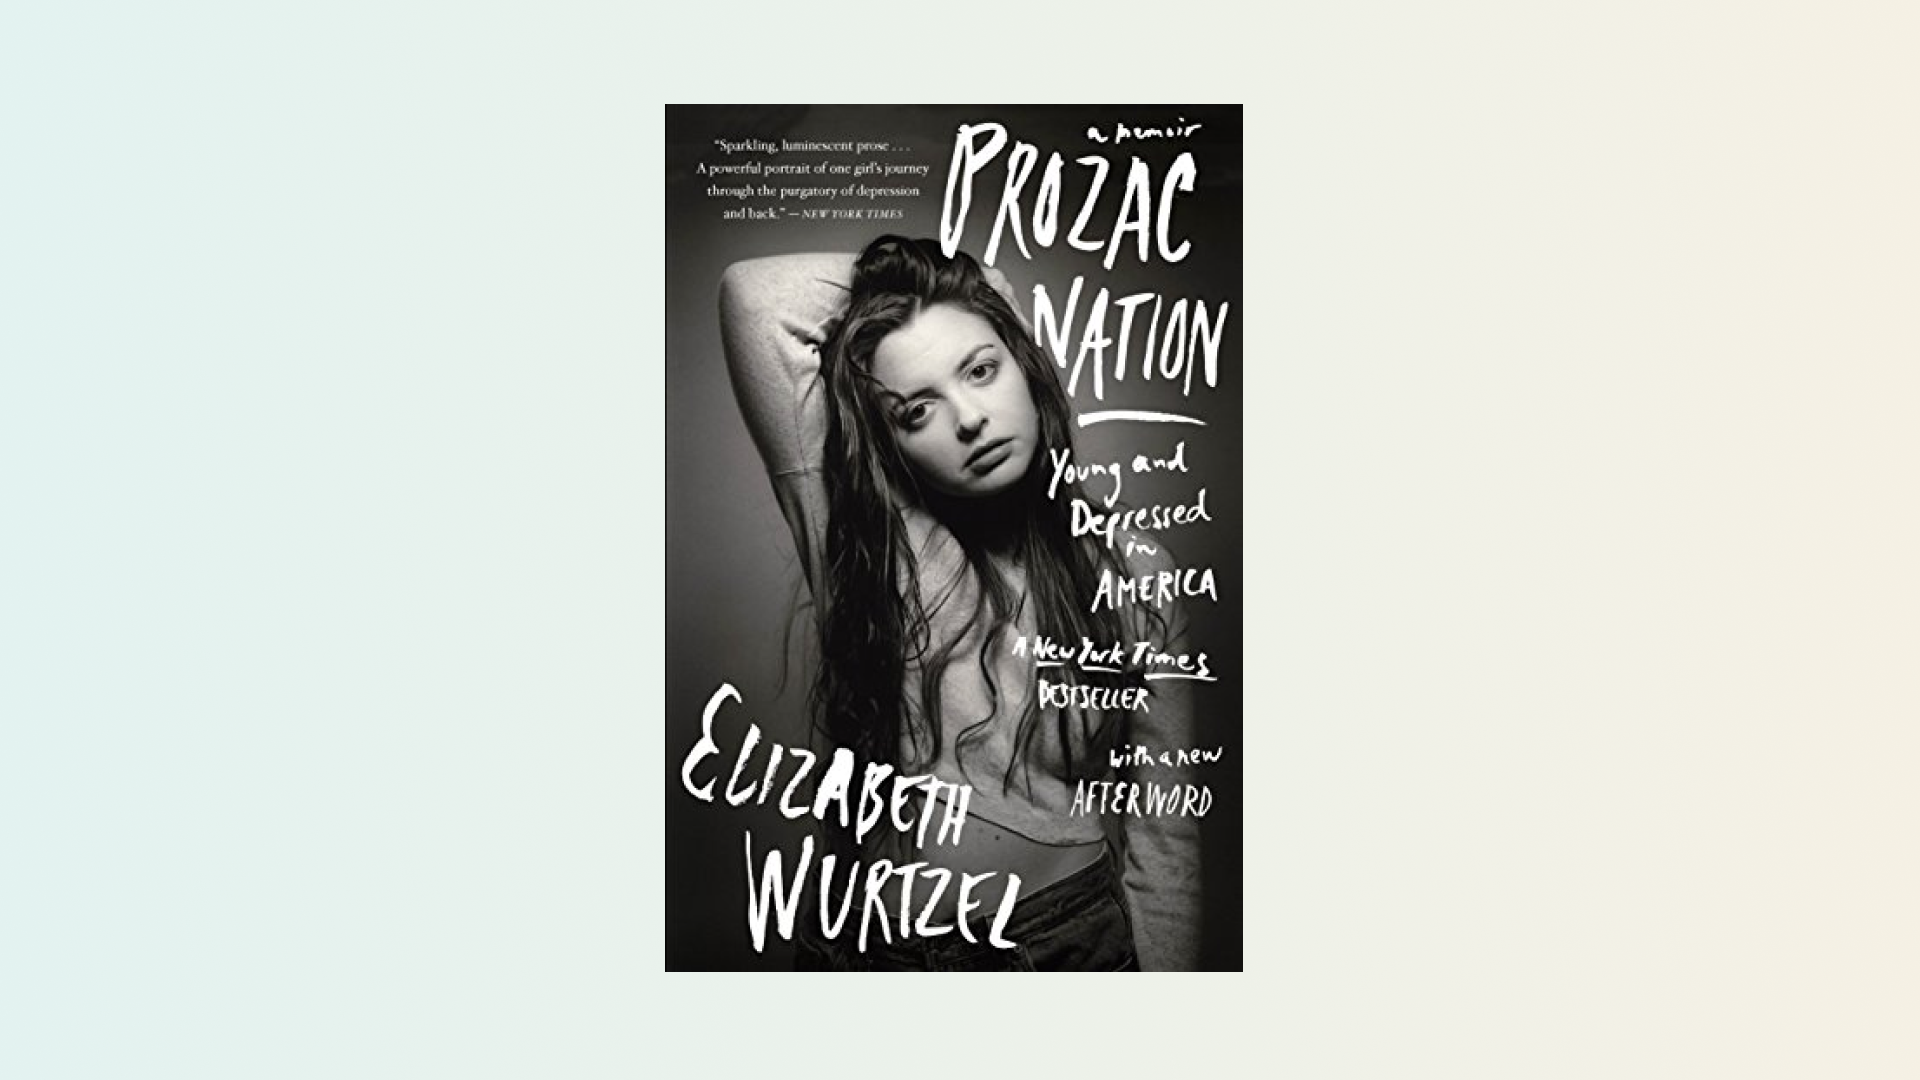 “Prozac Nation” by Elizabeth Wurtzel